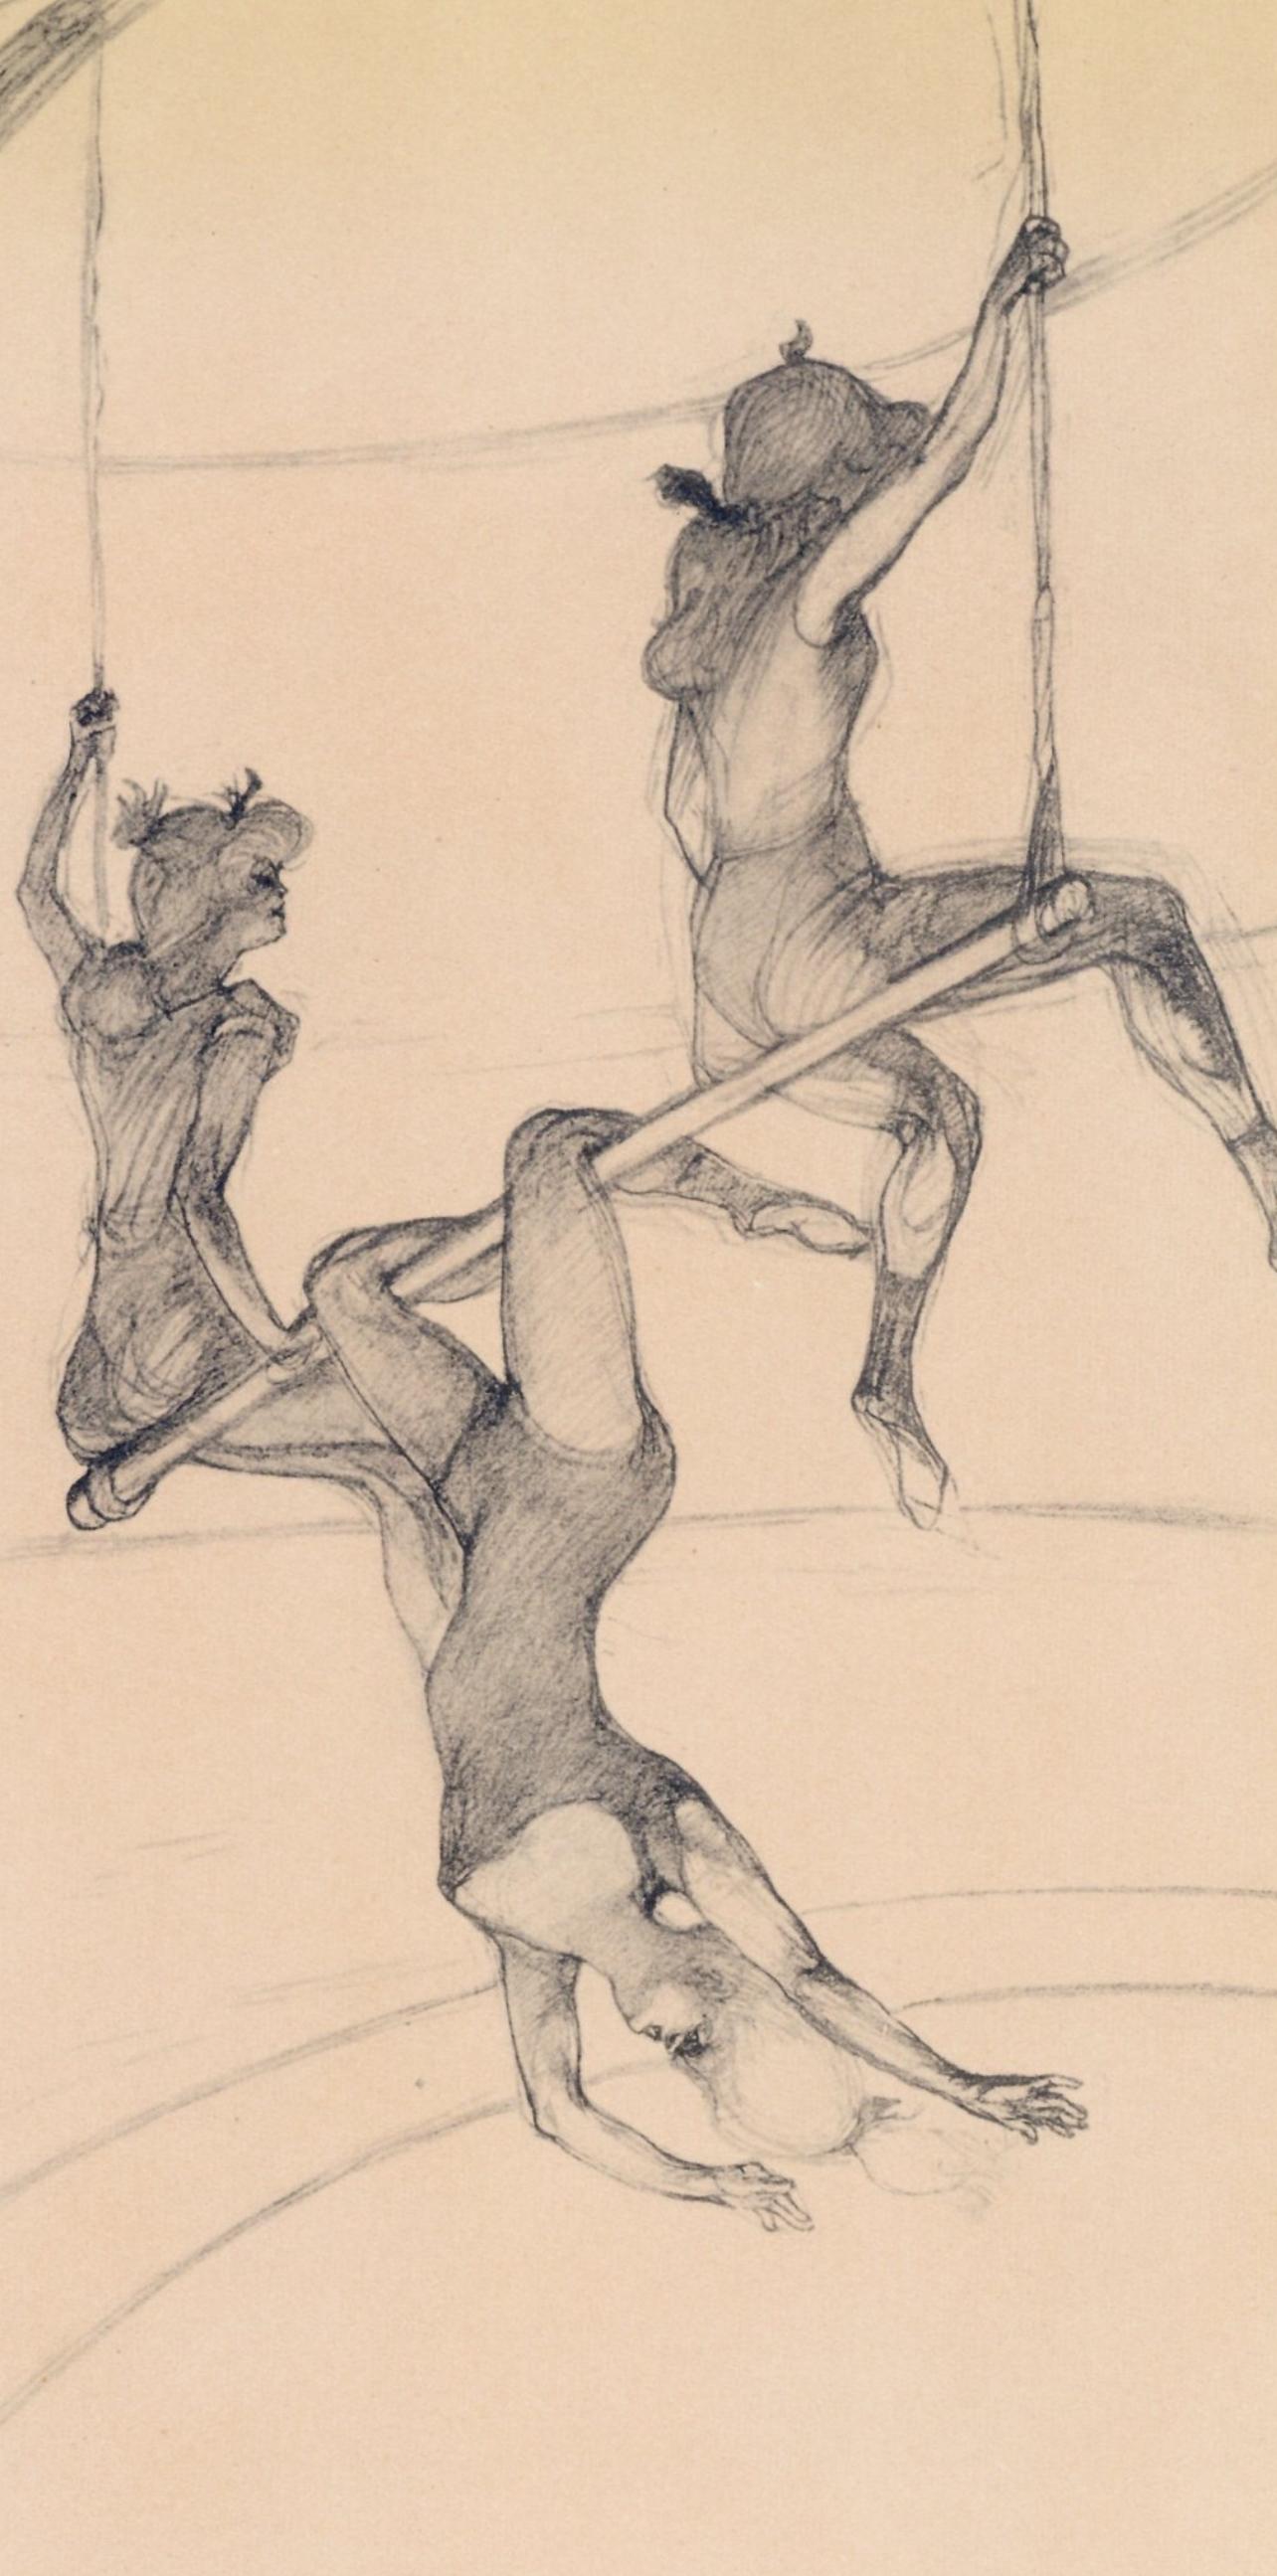 Toulouse-Lautrec, Le trapèze volant, Le Cirque par Toulouse-Lautrec (d'après) - Print de Henri de Toulouse-Lautrec